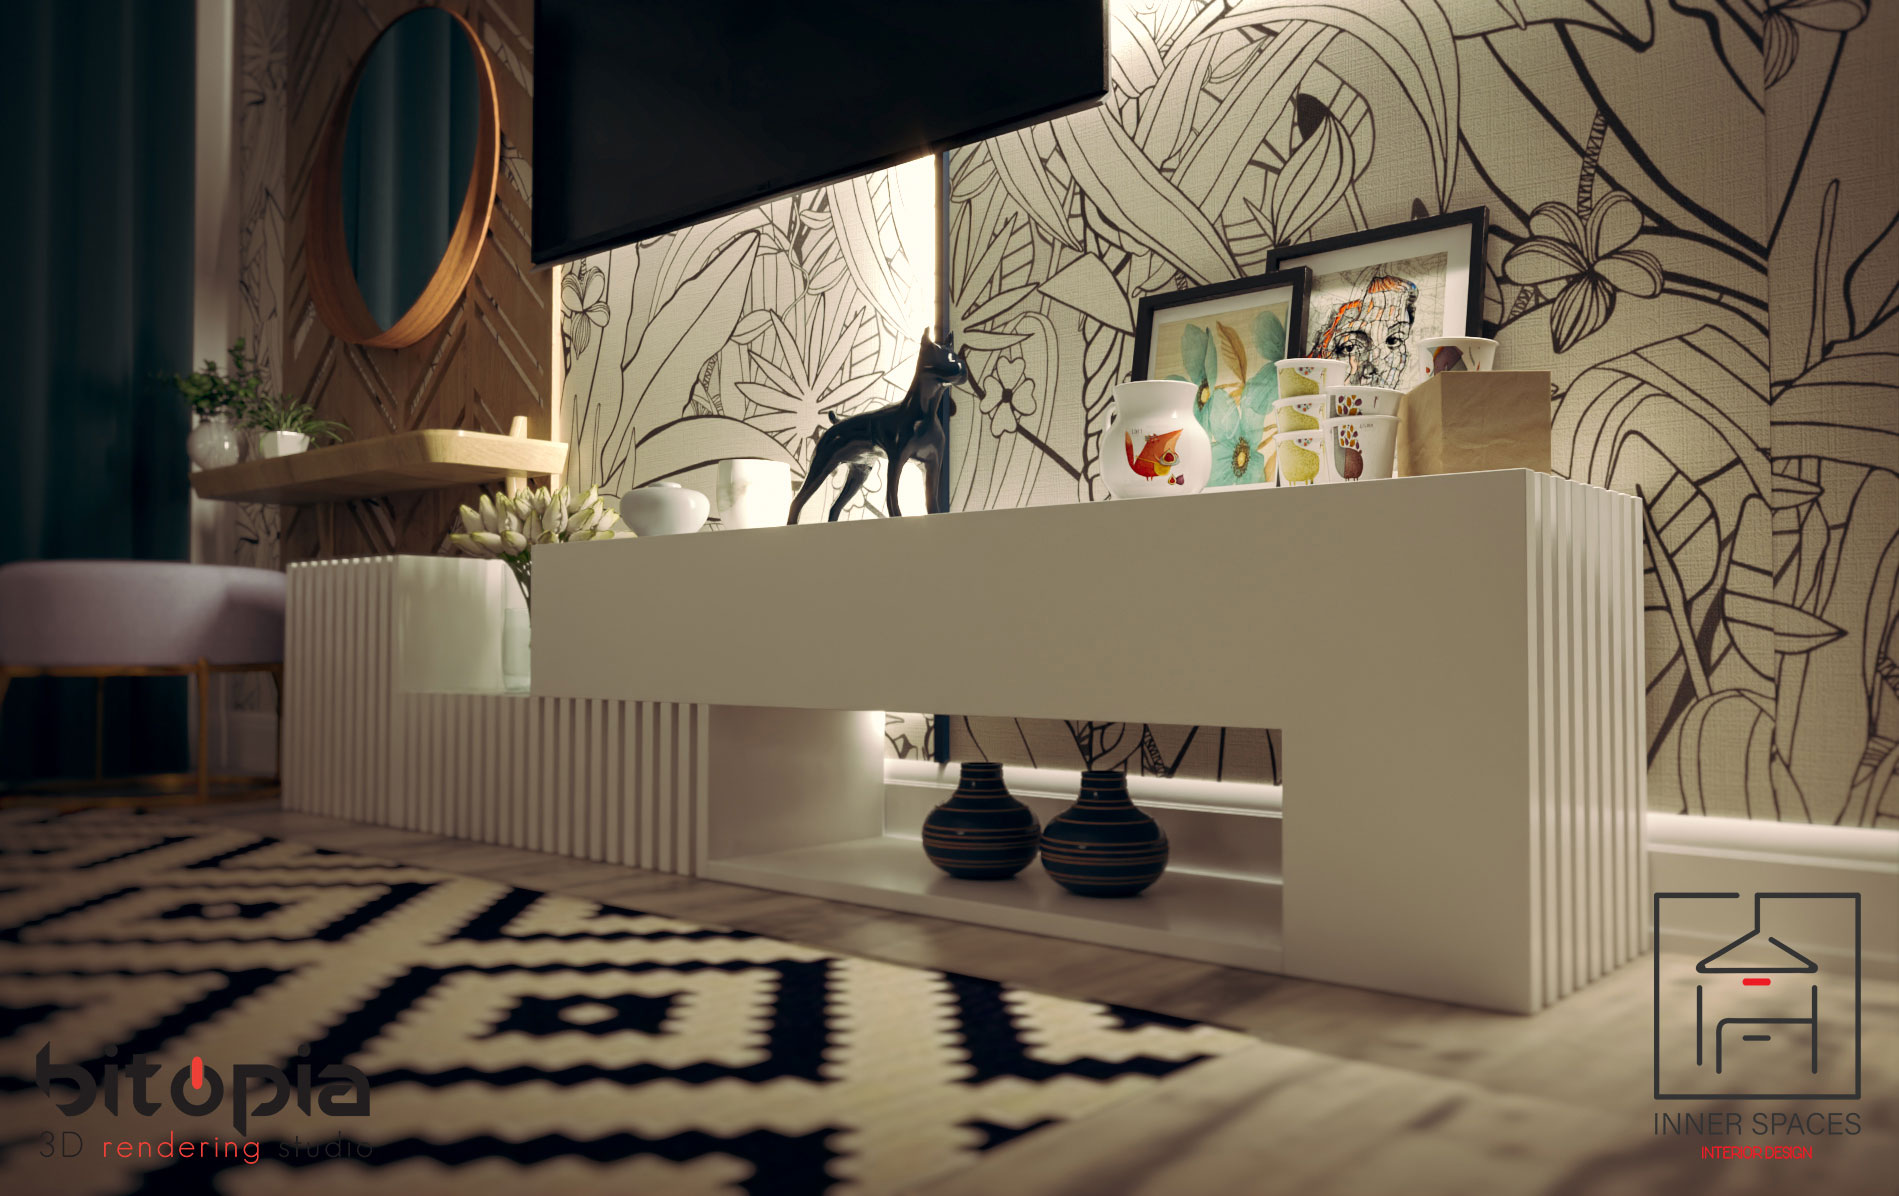 bedroom visualization - Bitopia 3D rendering studio